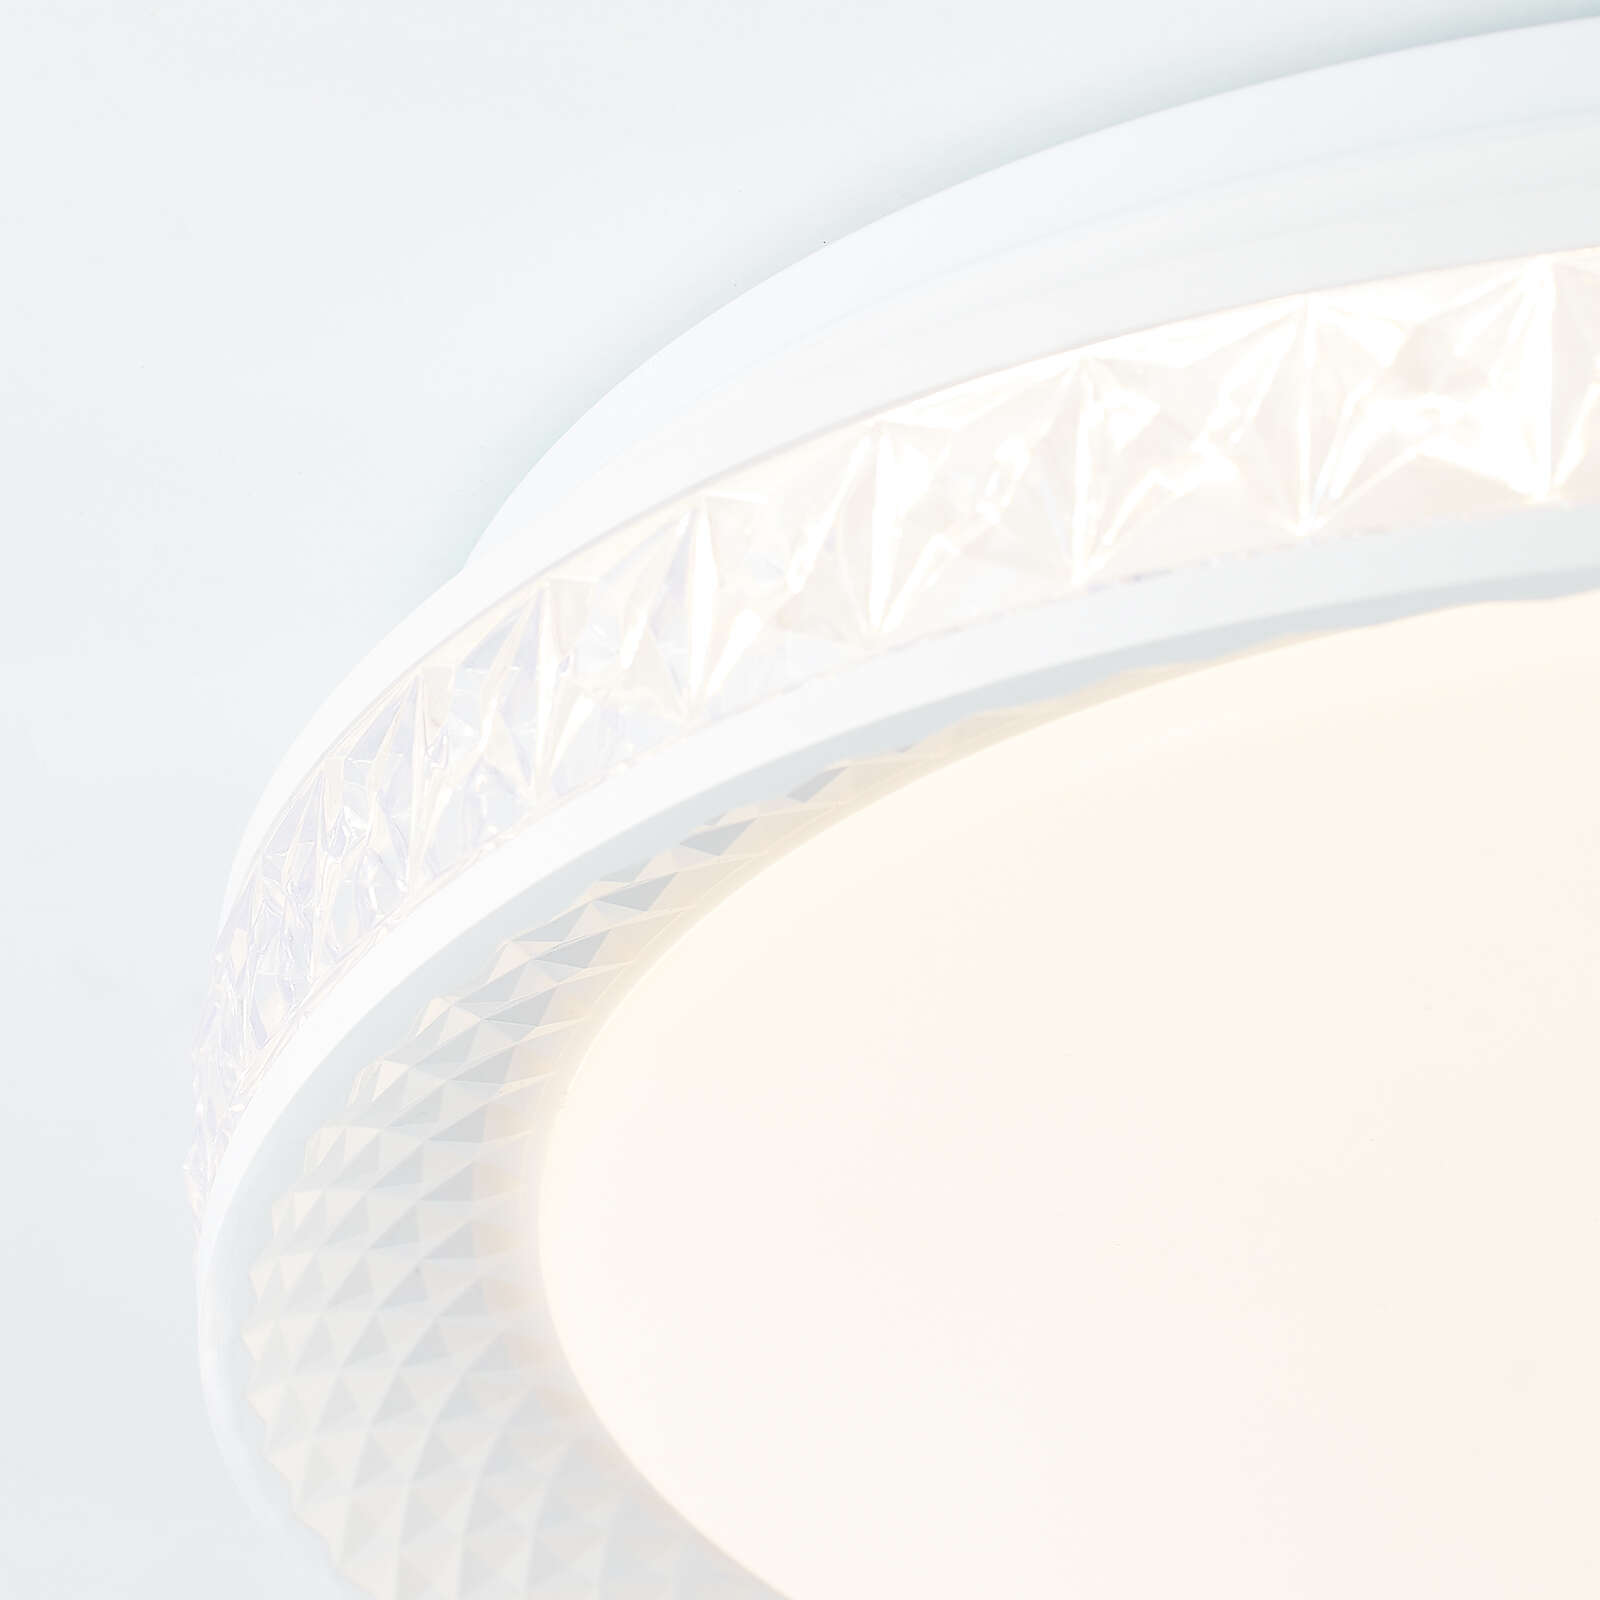             Plastic ceiling light - Damian - White
        